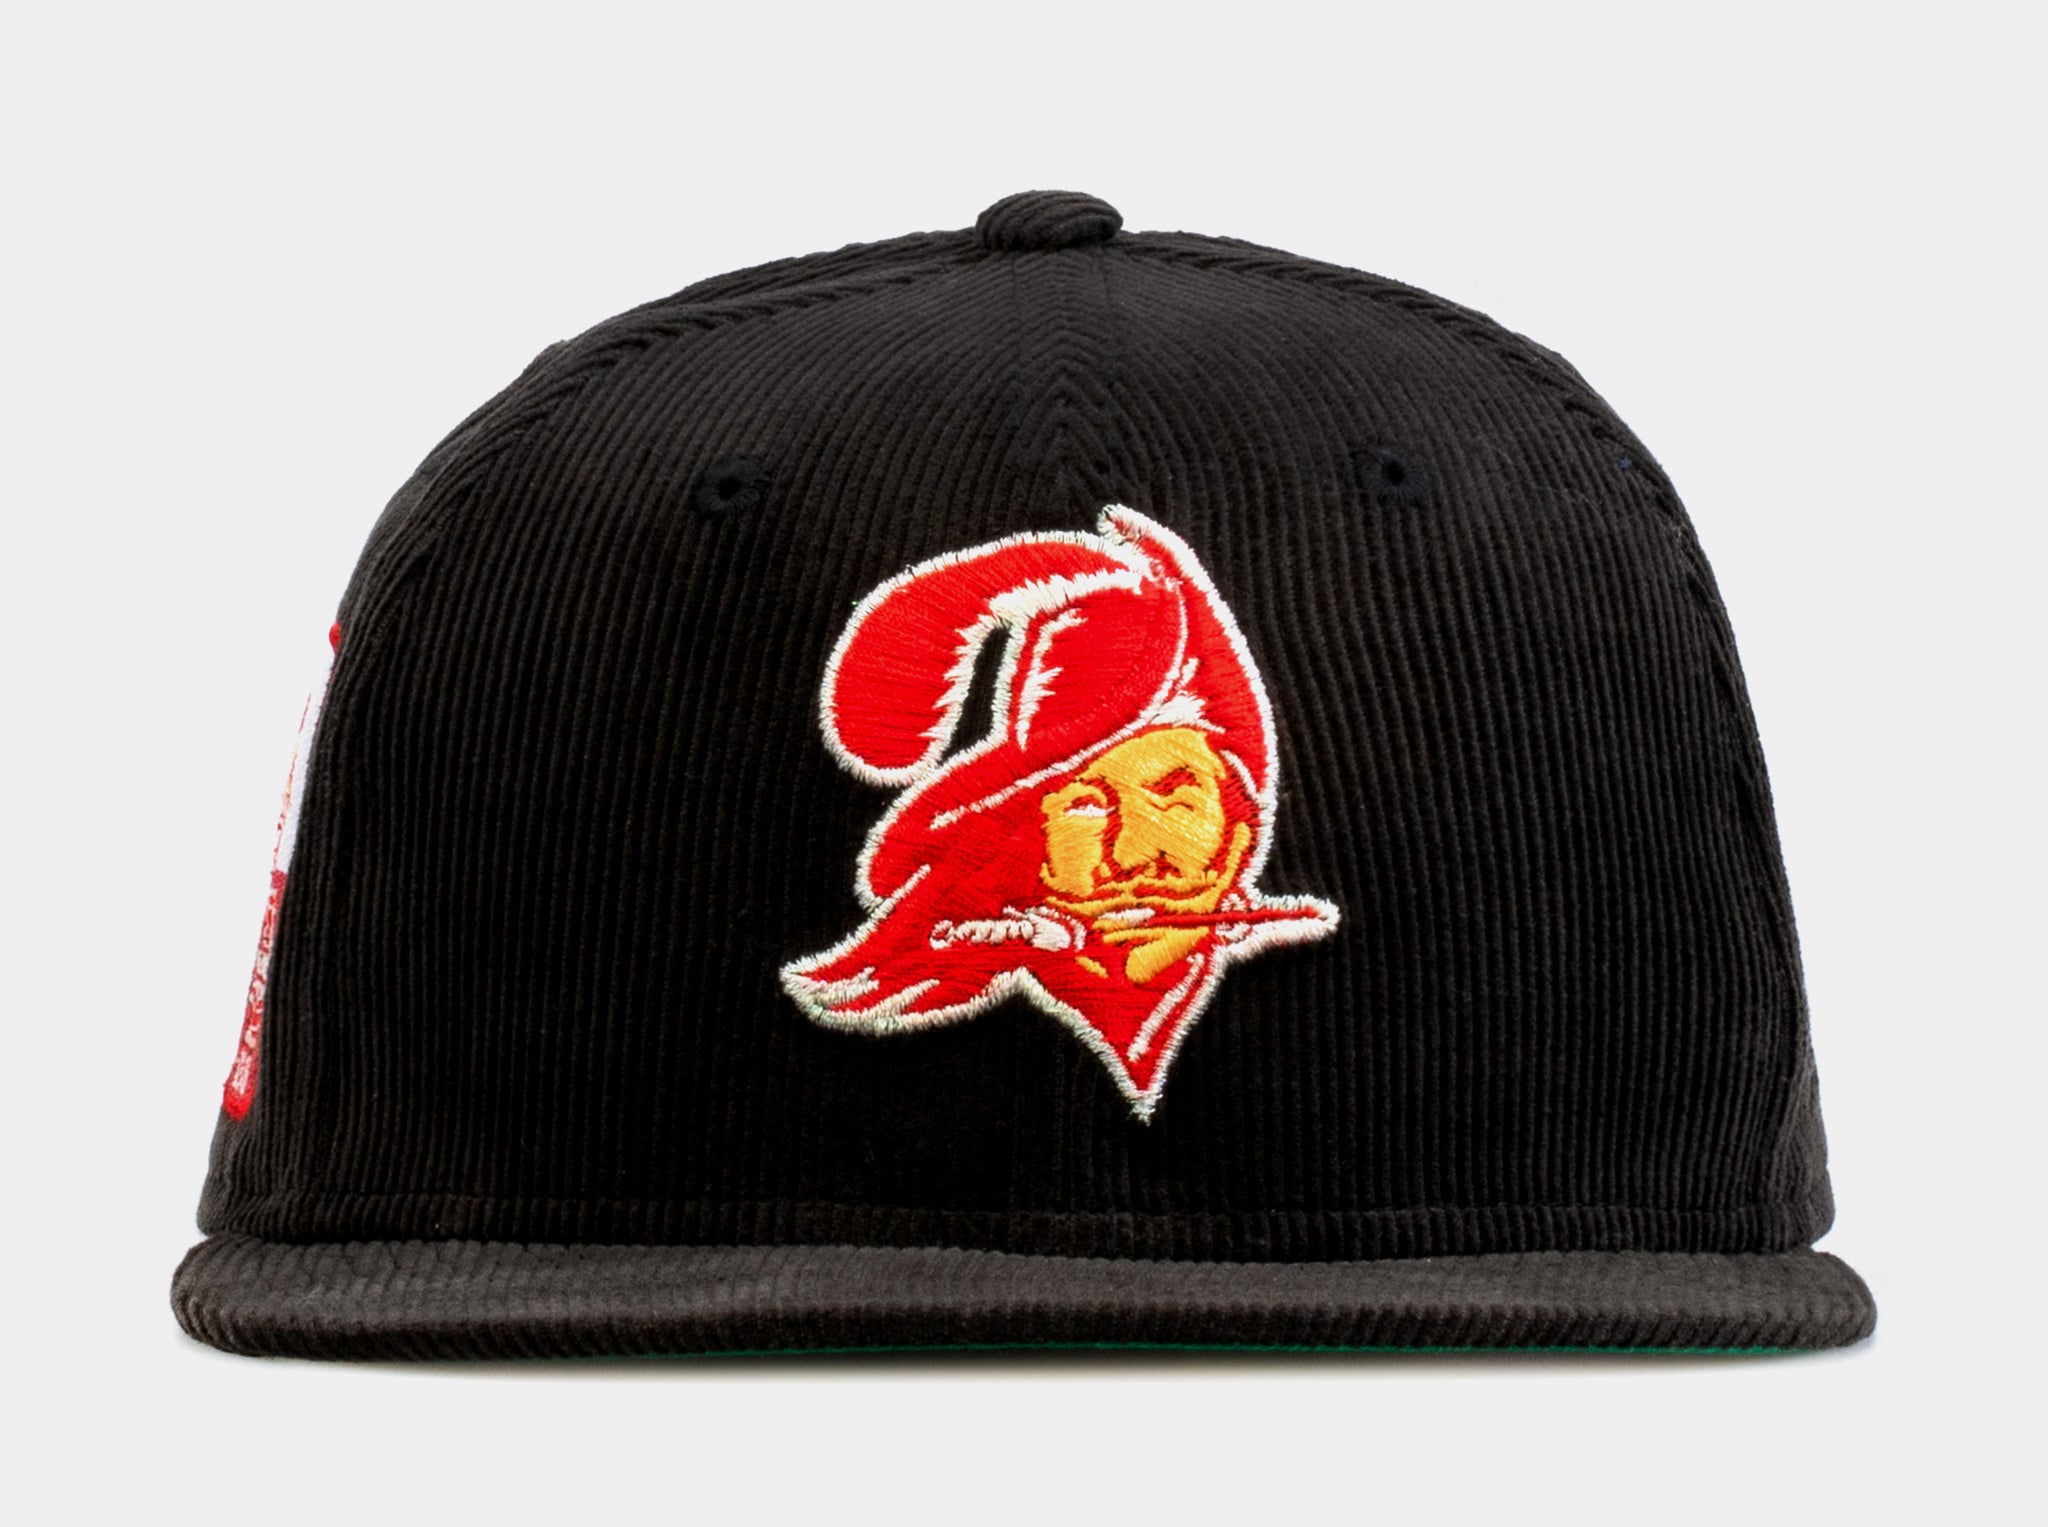 Tampa Bay Buccaneers cap